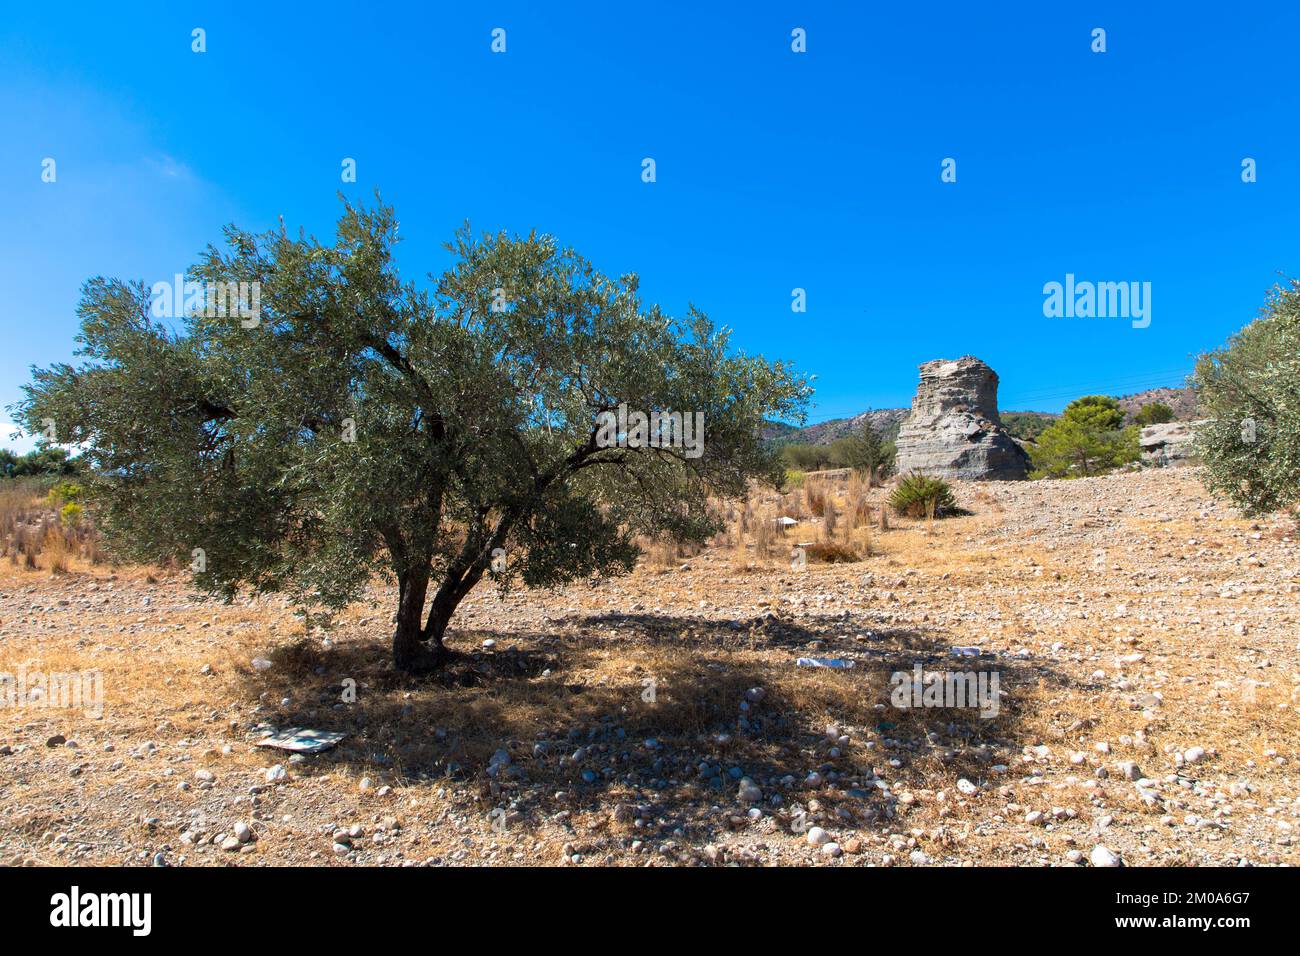 Olivenbaum und großer Stein in einer typisch griechischen Landschaft. Trockenes Klima und sonniger blauer Himmel. Rhodos-Insel, Griechenland. Stockfoto